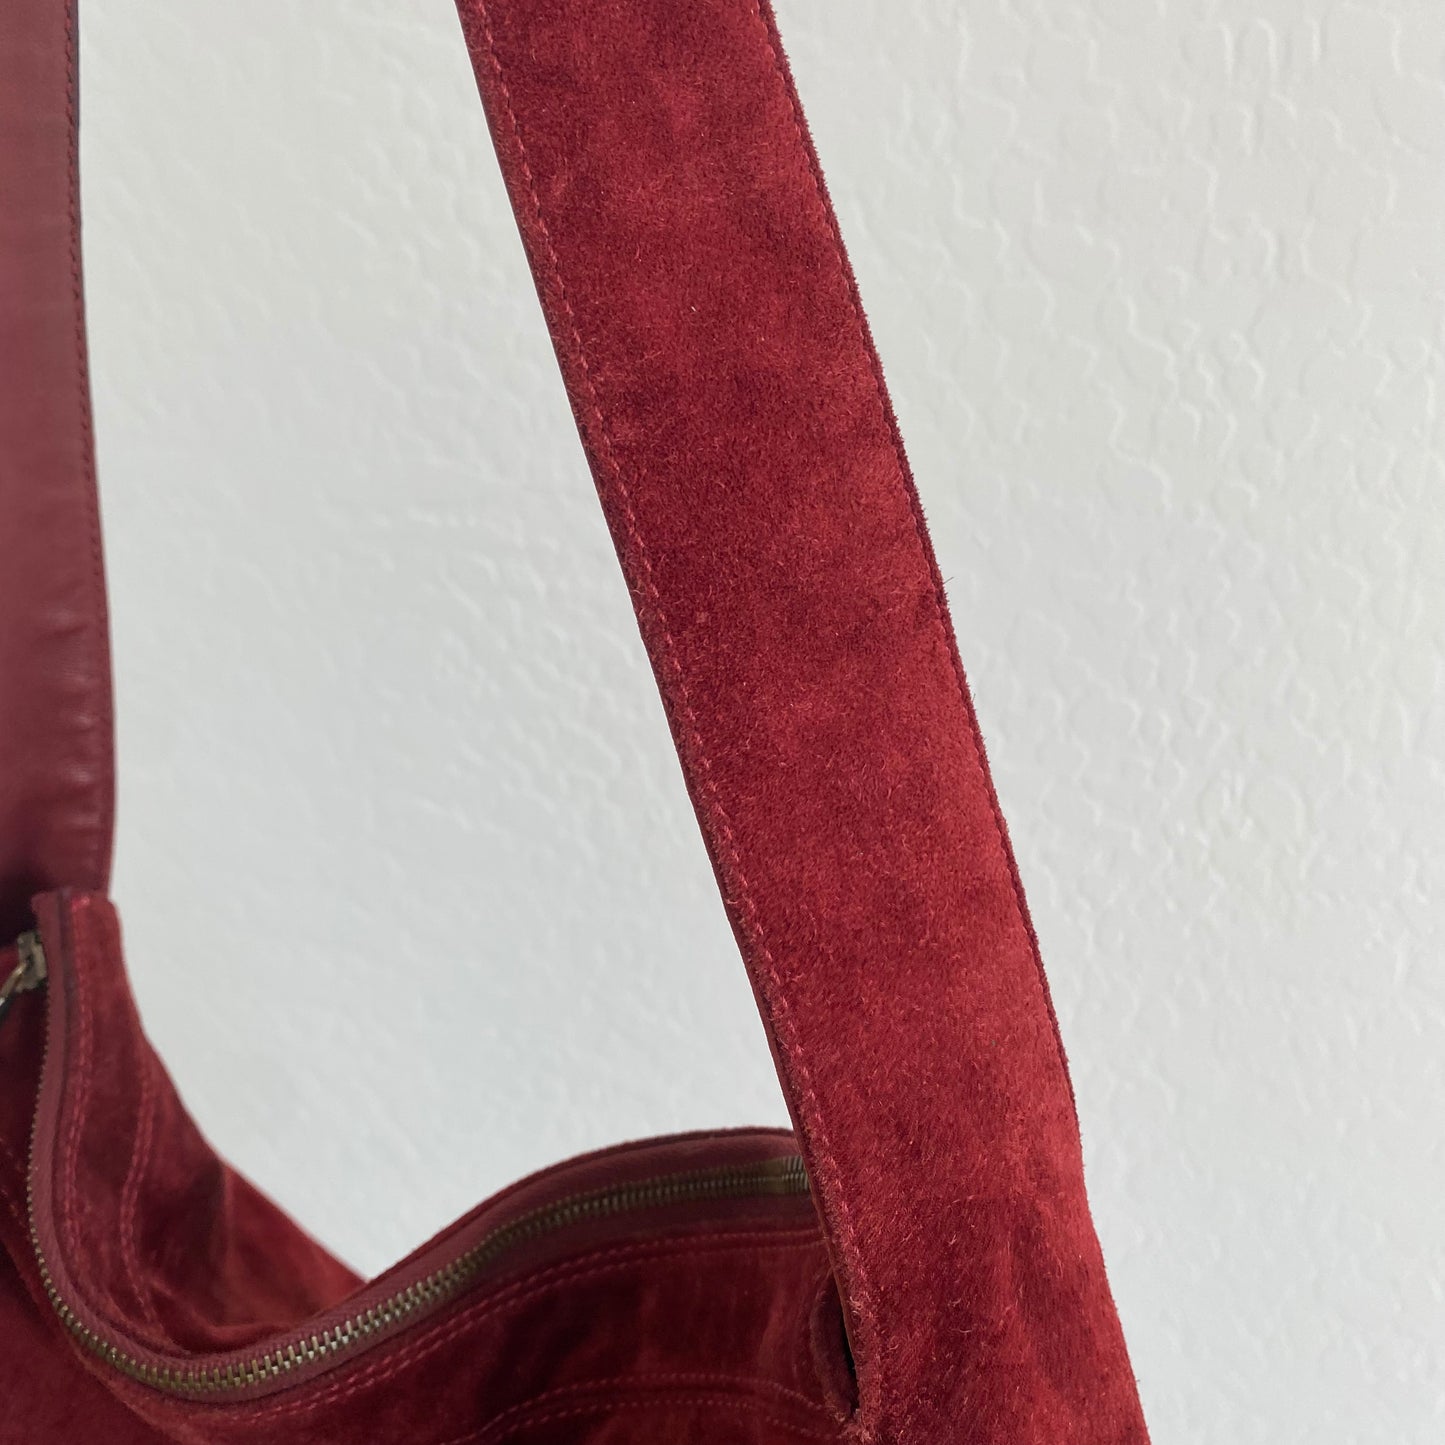 Chanel Suede Leather Tassel Hobo Shoulder Bag